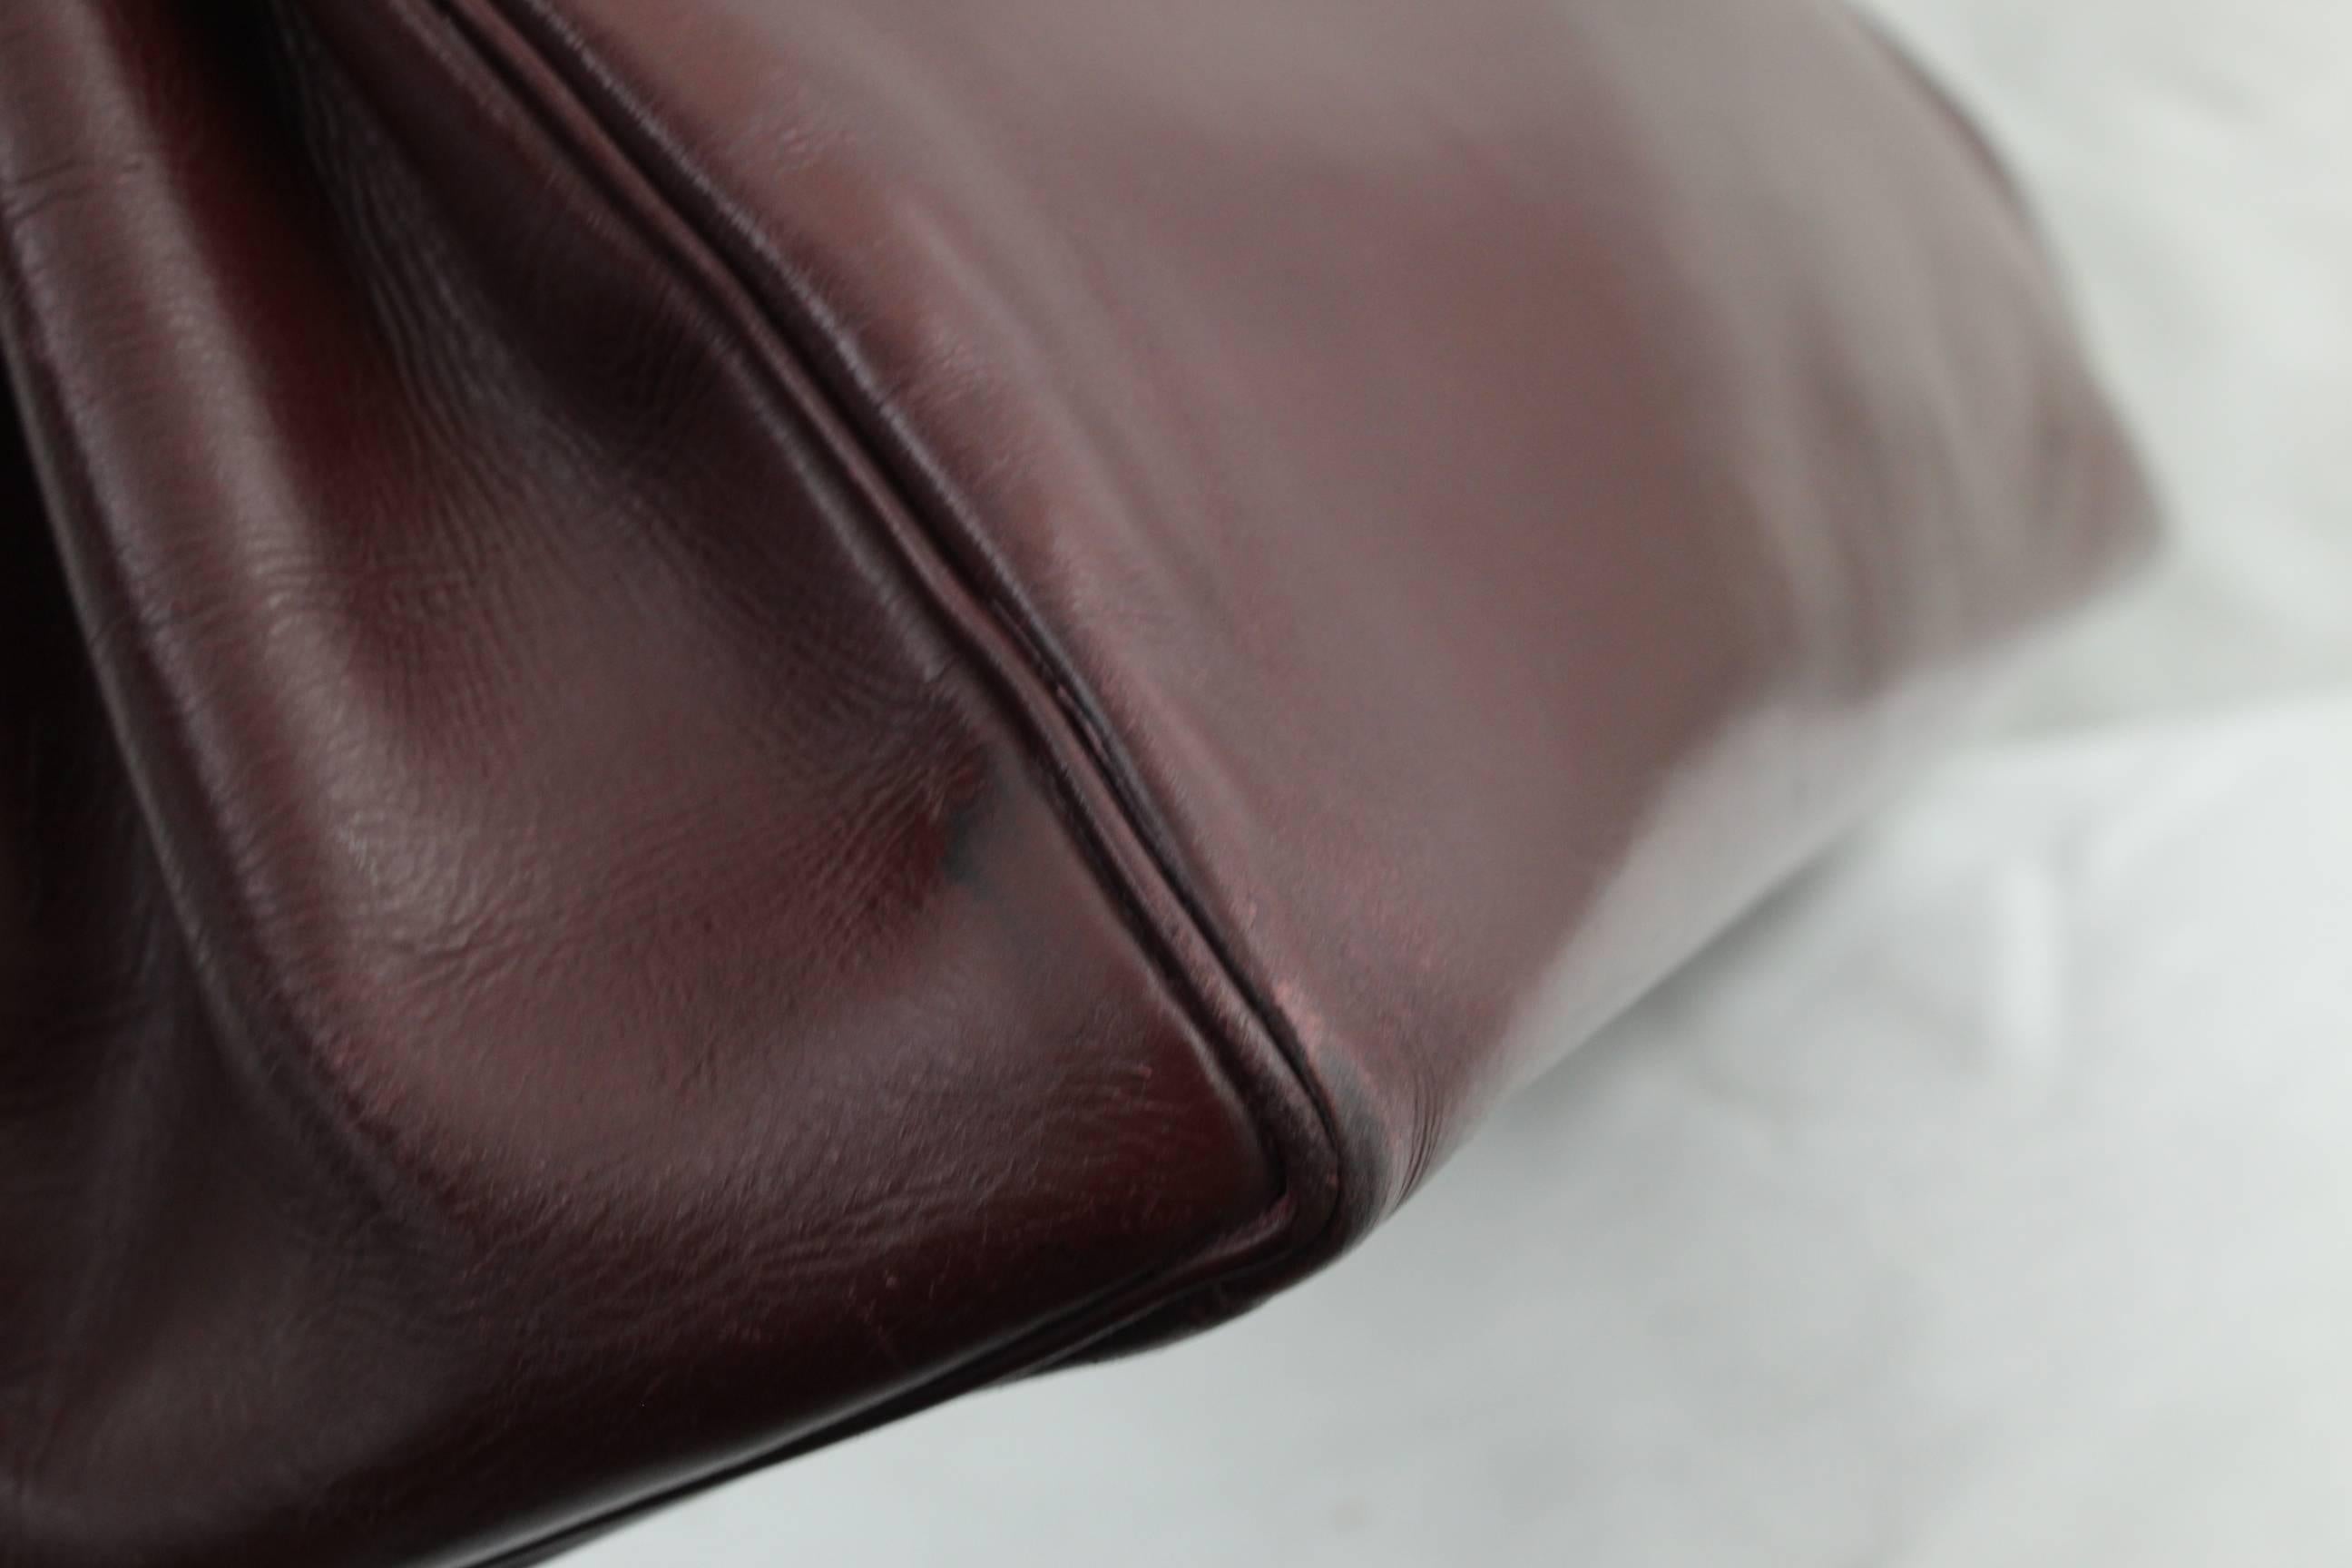 Black 1960 Hermes Vintage Kelly Bag in Burgundy Leather with Golden Hardware